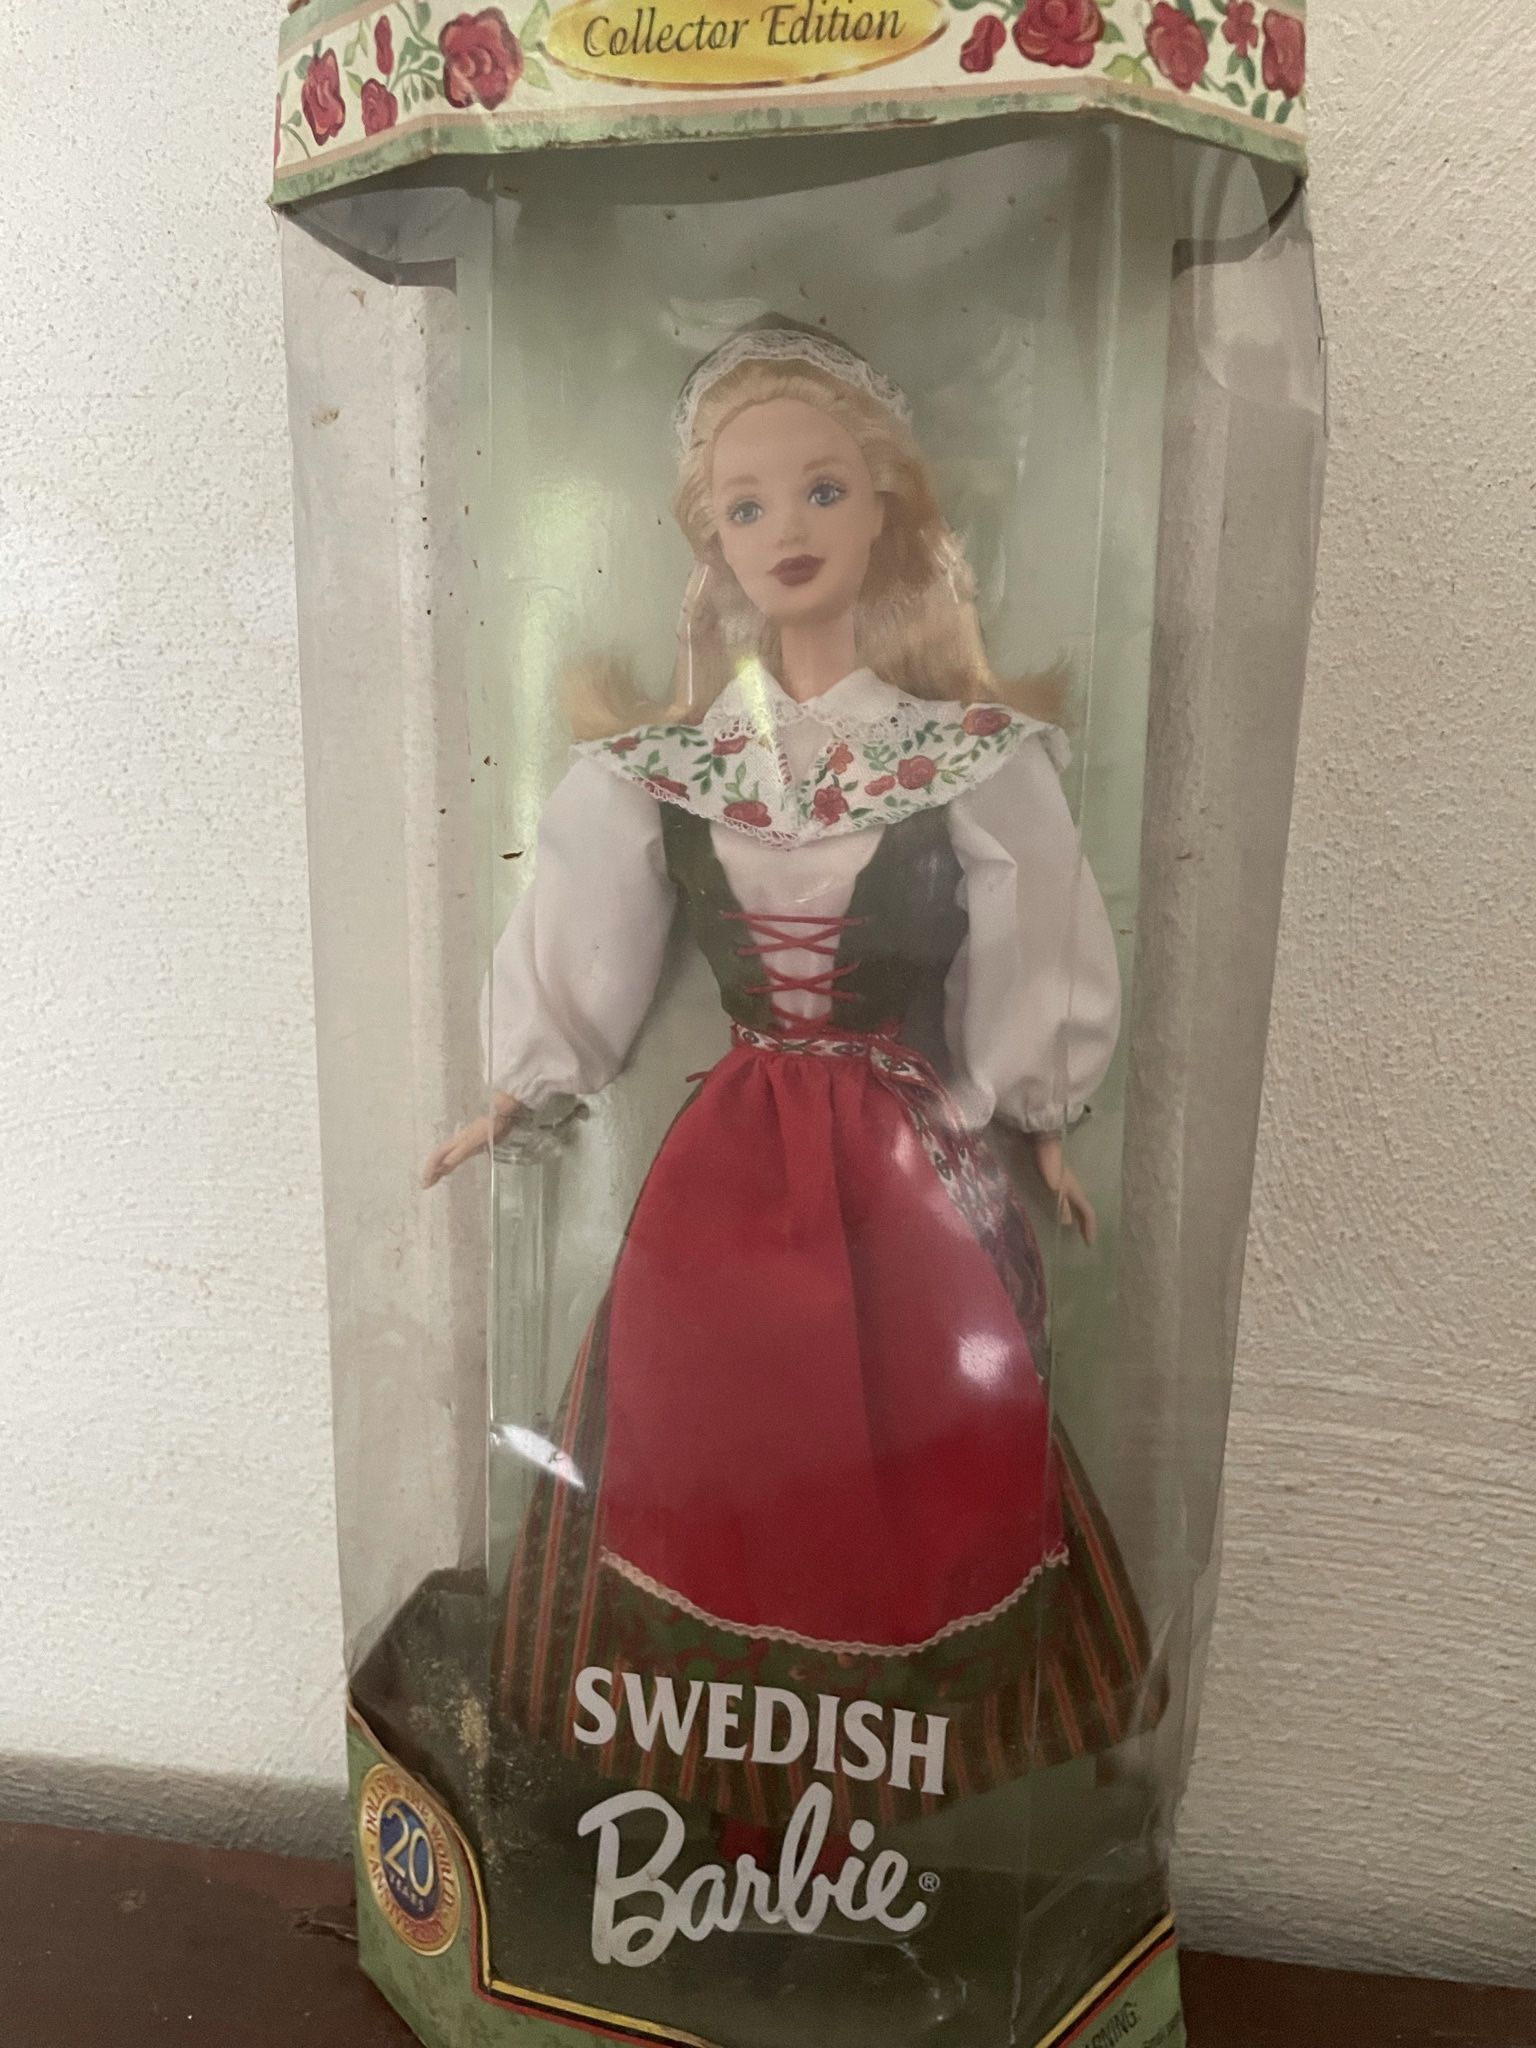 Swedish Barbie!